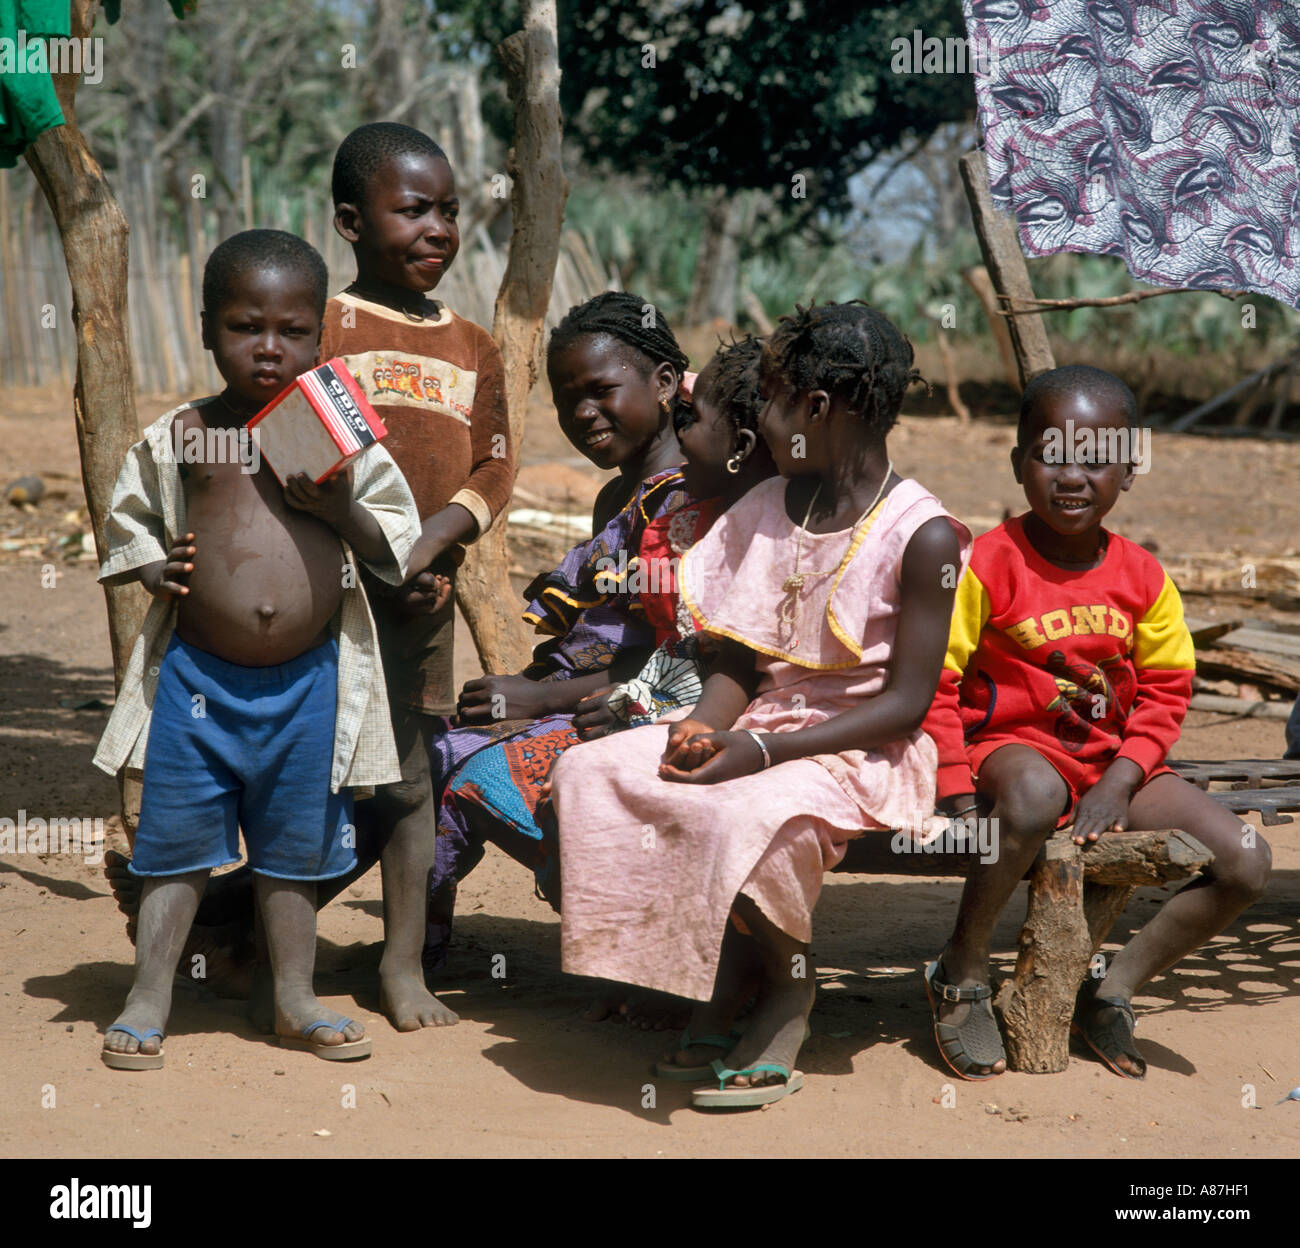 Gruppo dei bambini nei locali di un villaggio nativo, Gambia, Africa occidentale Foto Stock